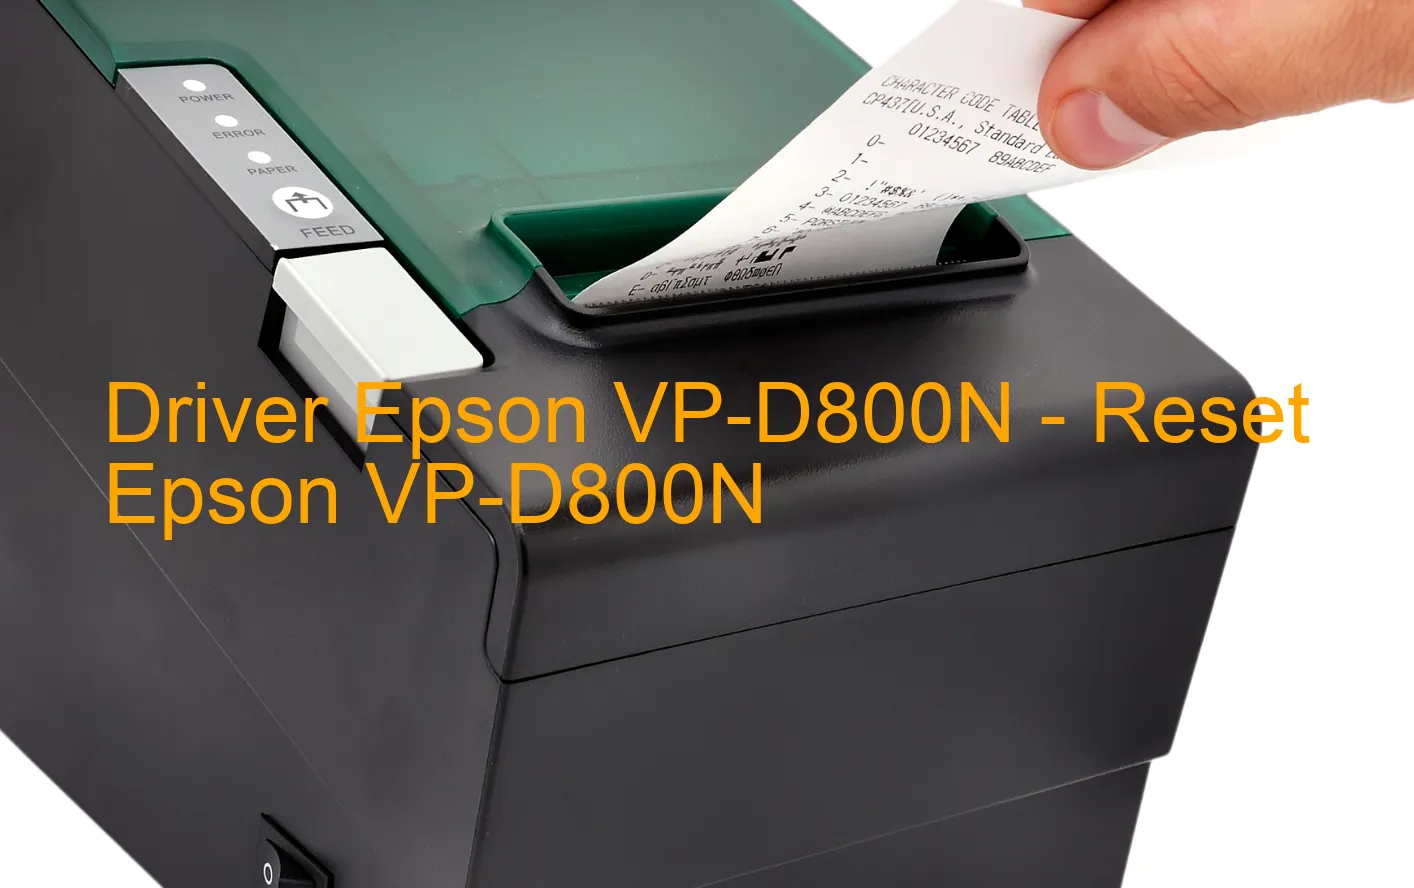 Epson VP-D800Nのドライバー、Epson VP-D800Nのリセットソフトウェア